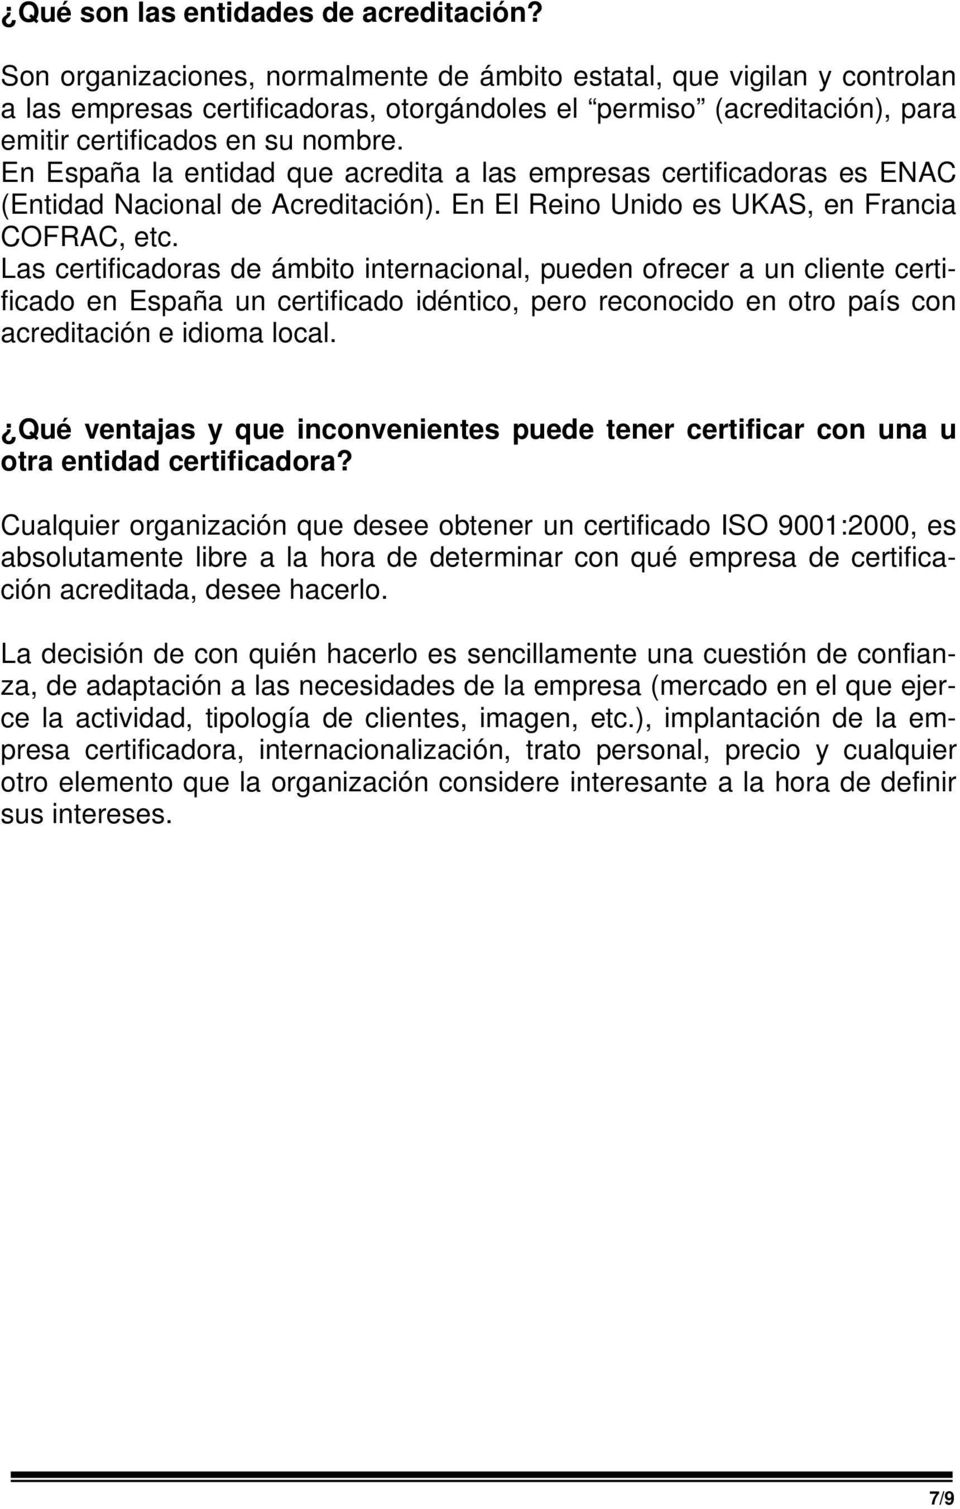 En España la entidad que acredita a las empresas certificadoras es ENAC (Entidad Nacional de Acreditación). En El Reino Unido es UKAS, en Francia COFRAC, etc.